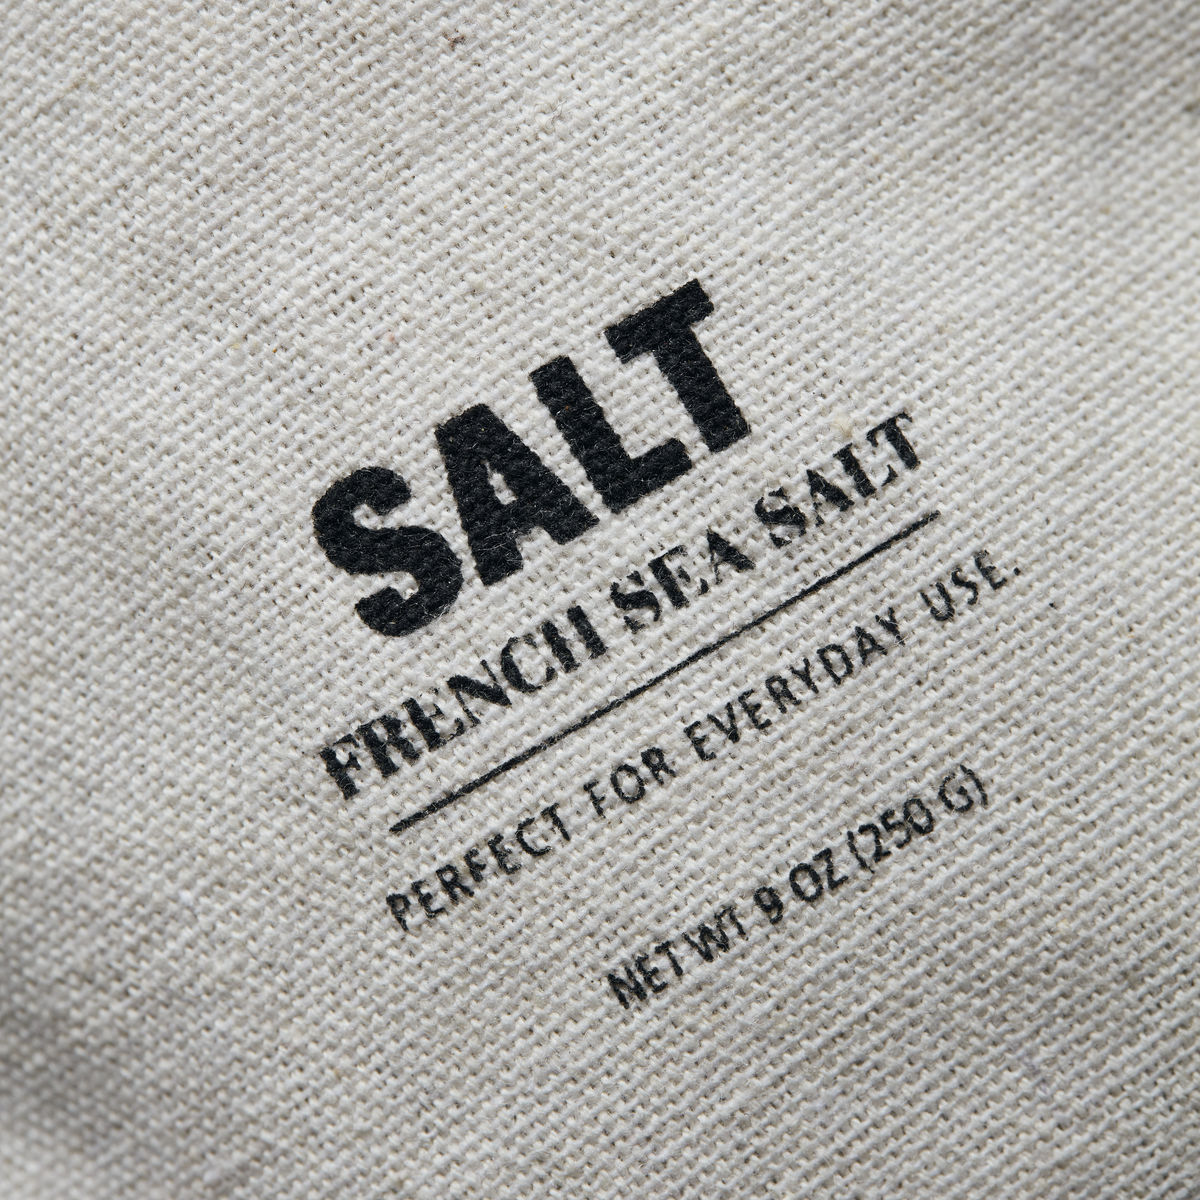 Salz Bag "Französisches Meersalz"